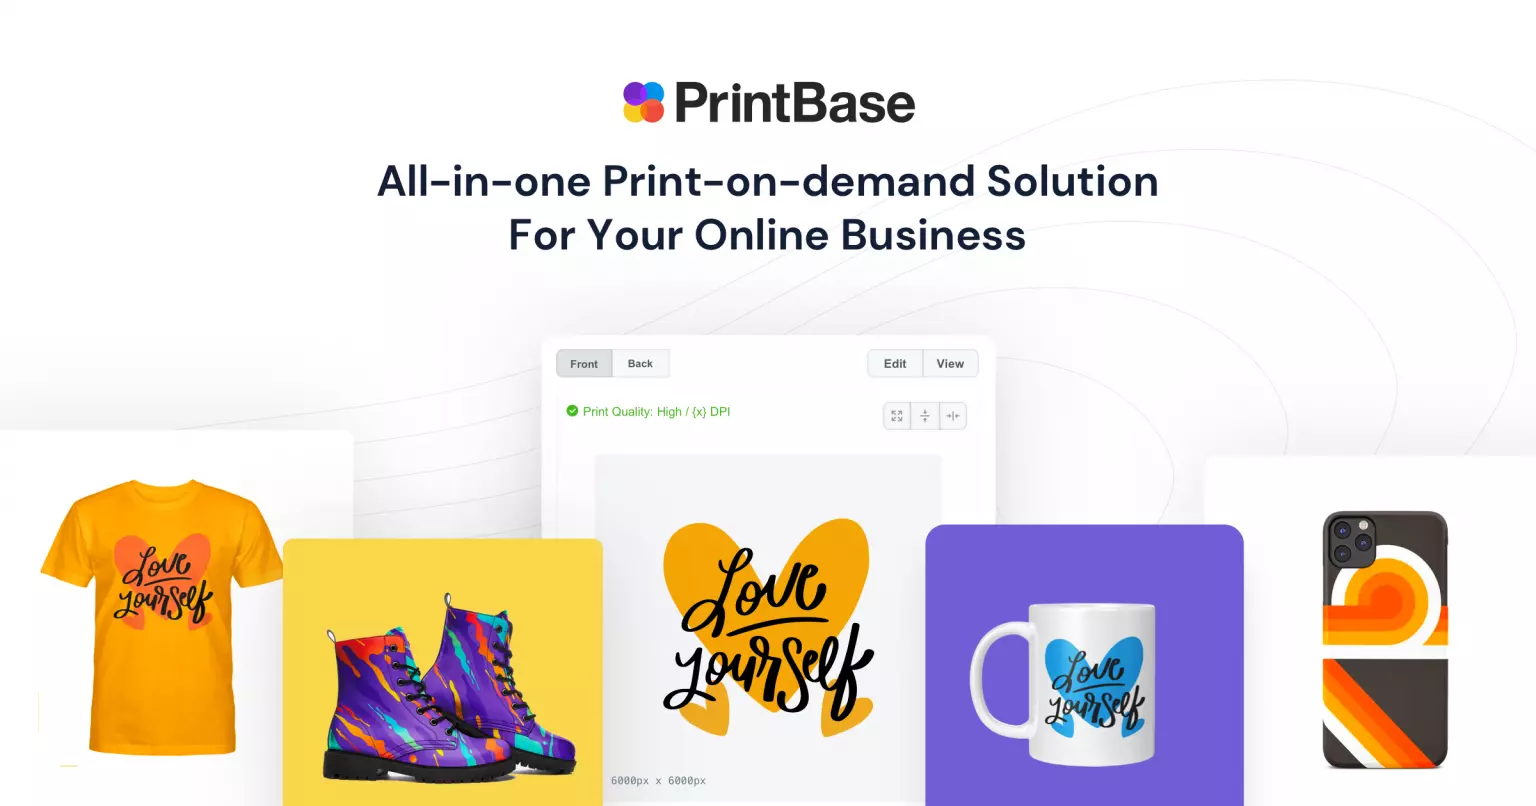 PrintBase